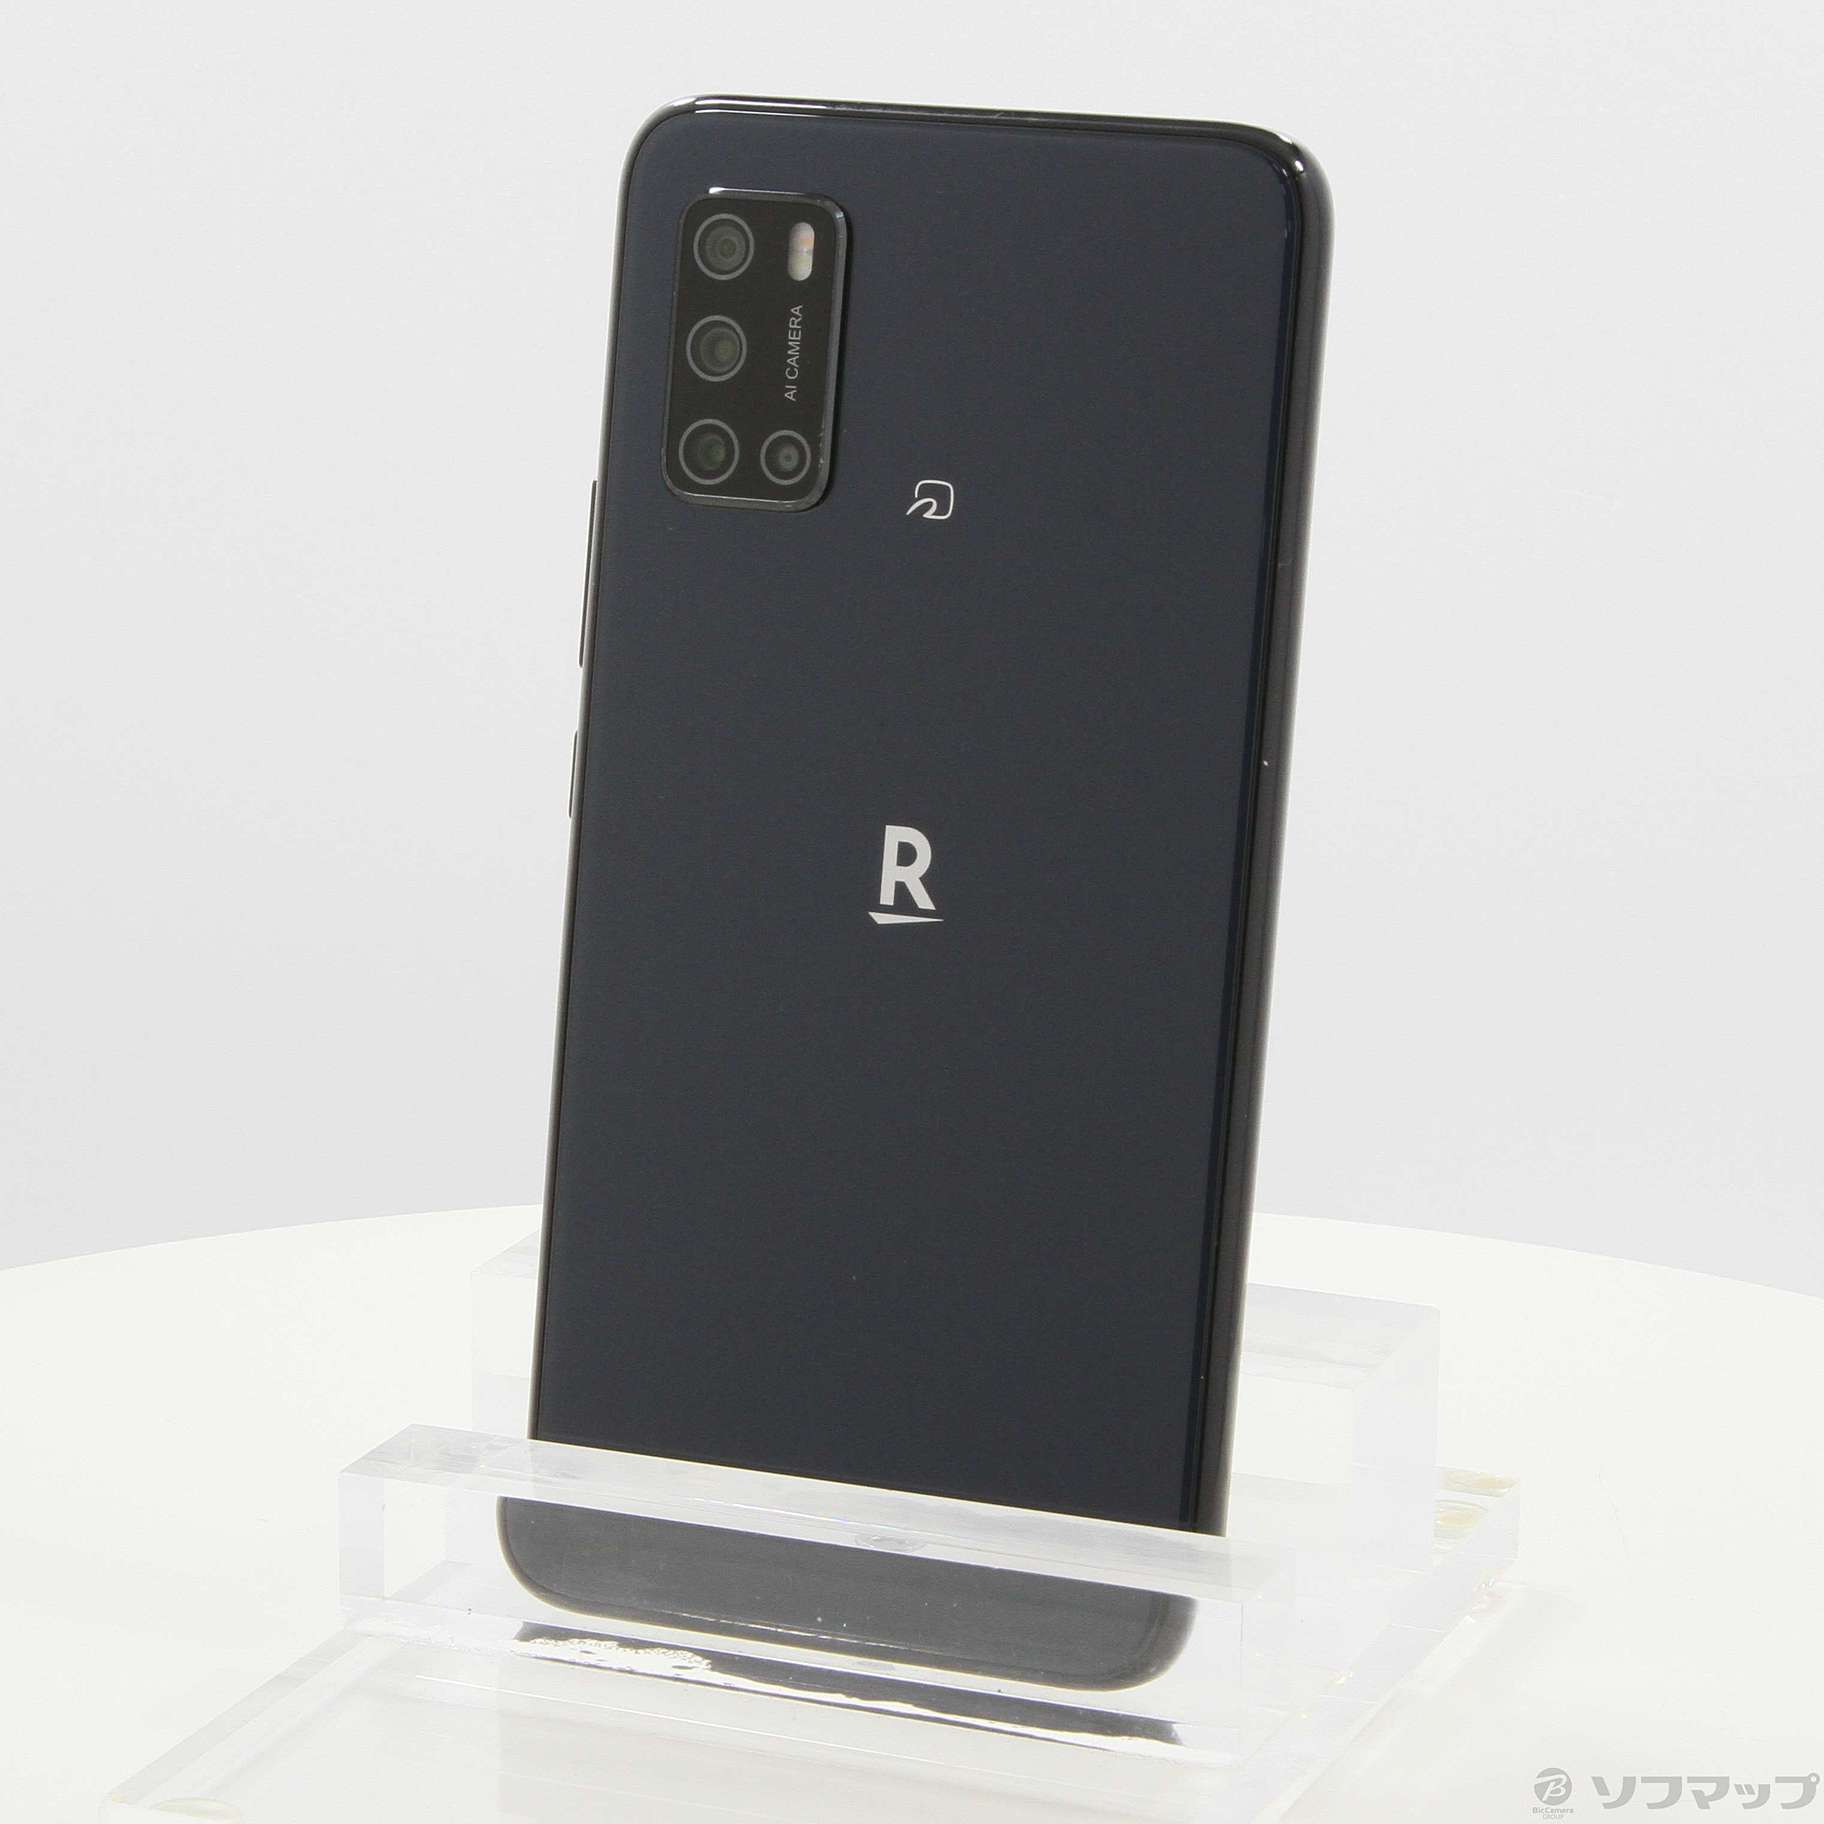 Rakuten BIG s 新品 - スマートフォン本体